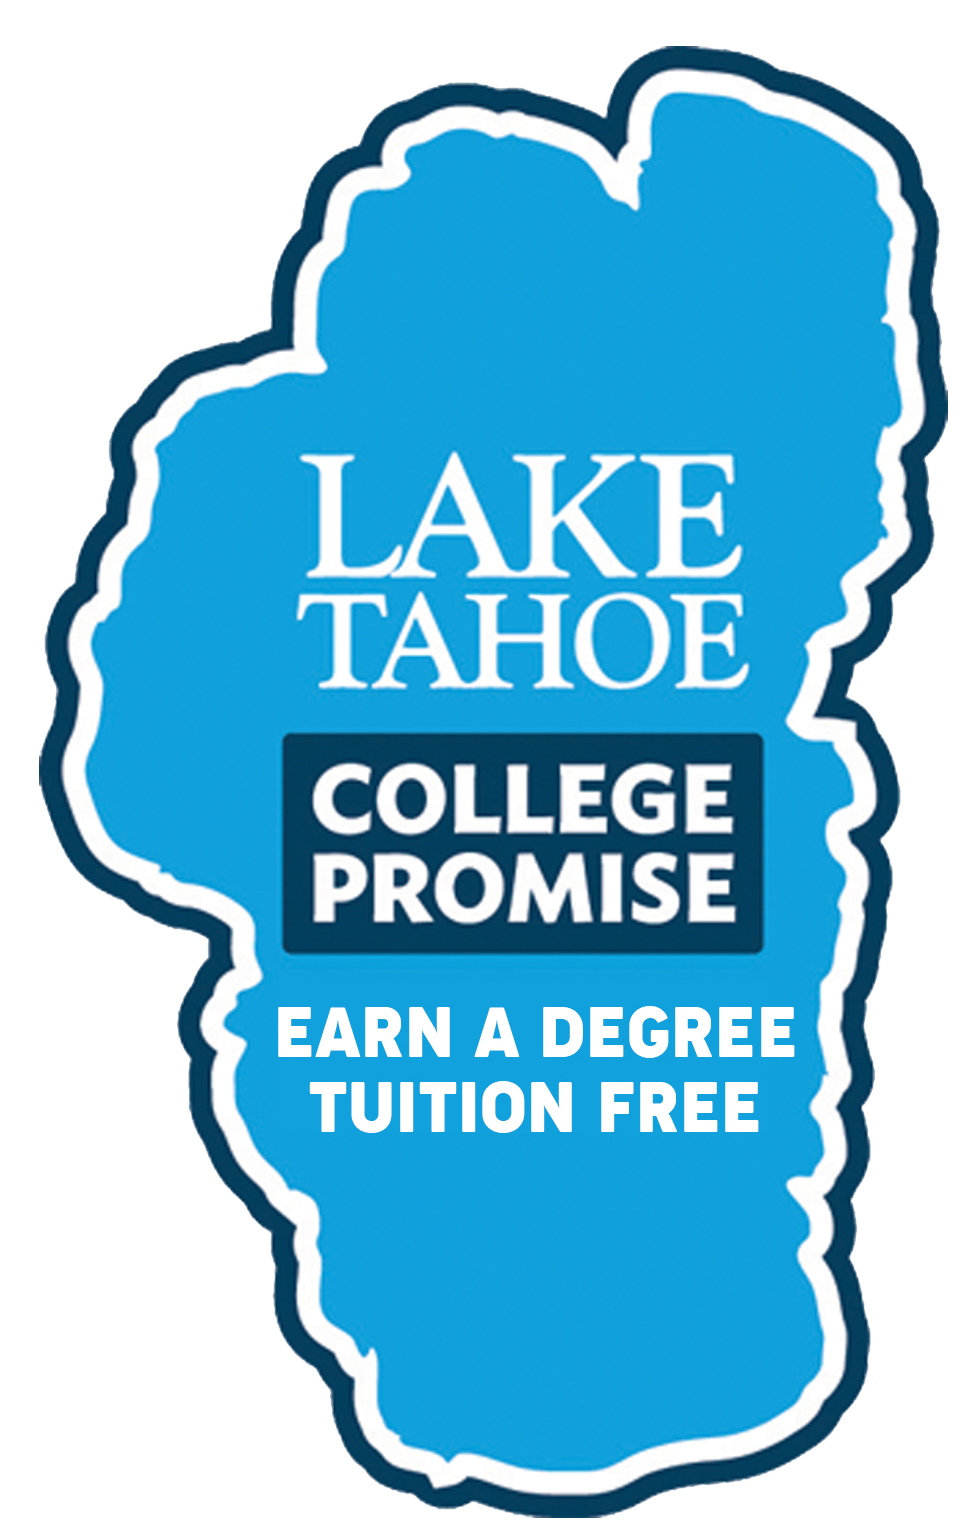 Lake Tahoe College Promise logo